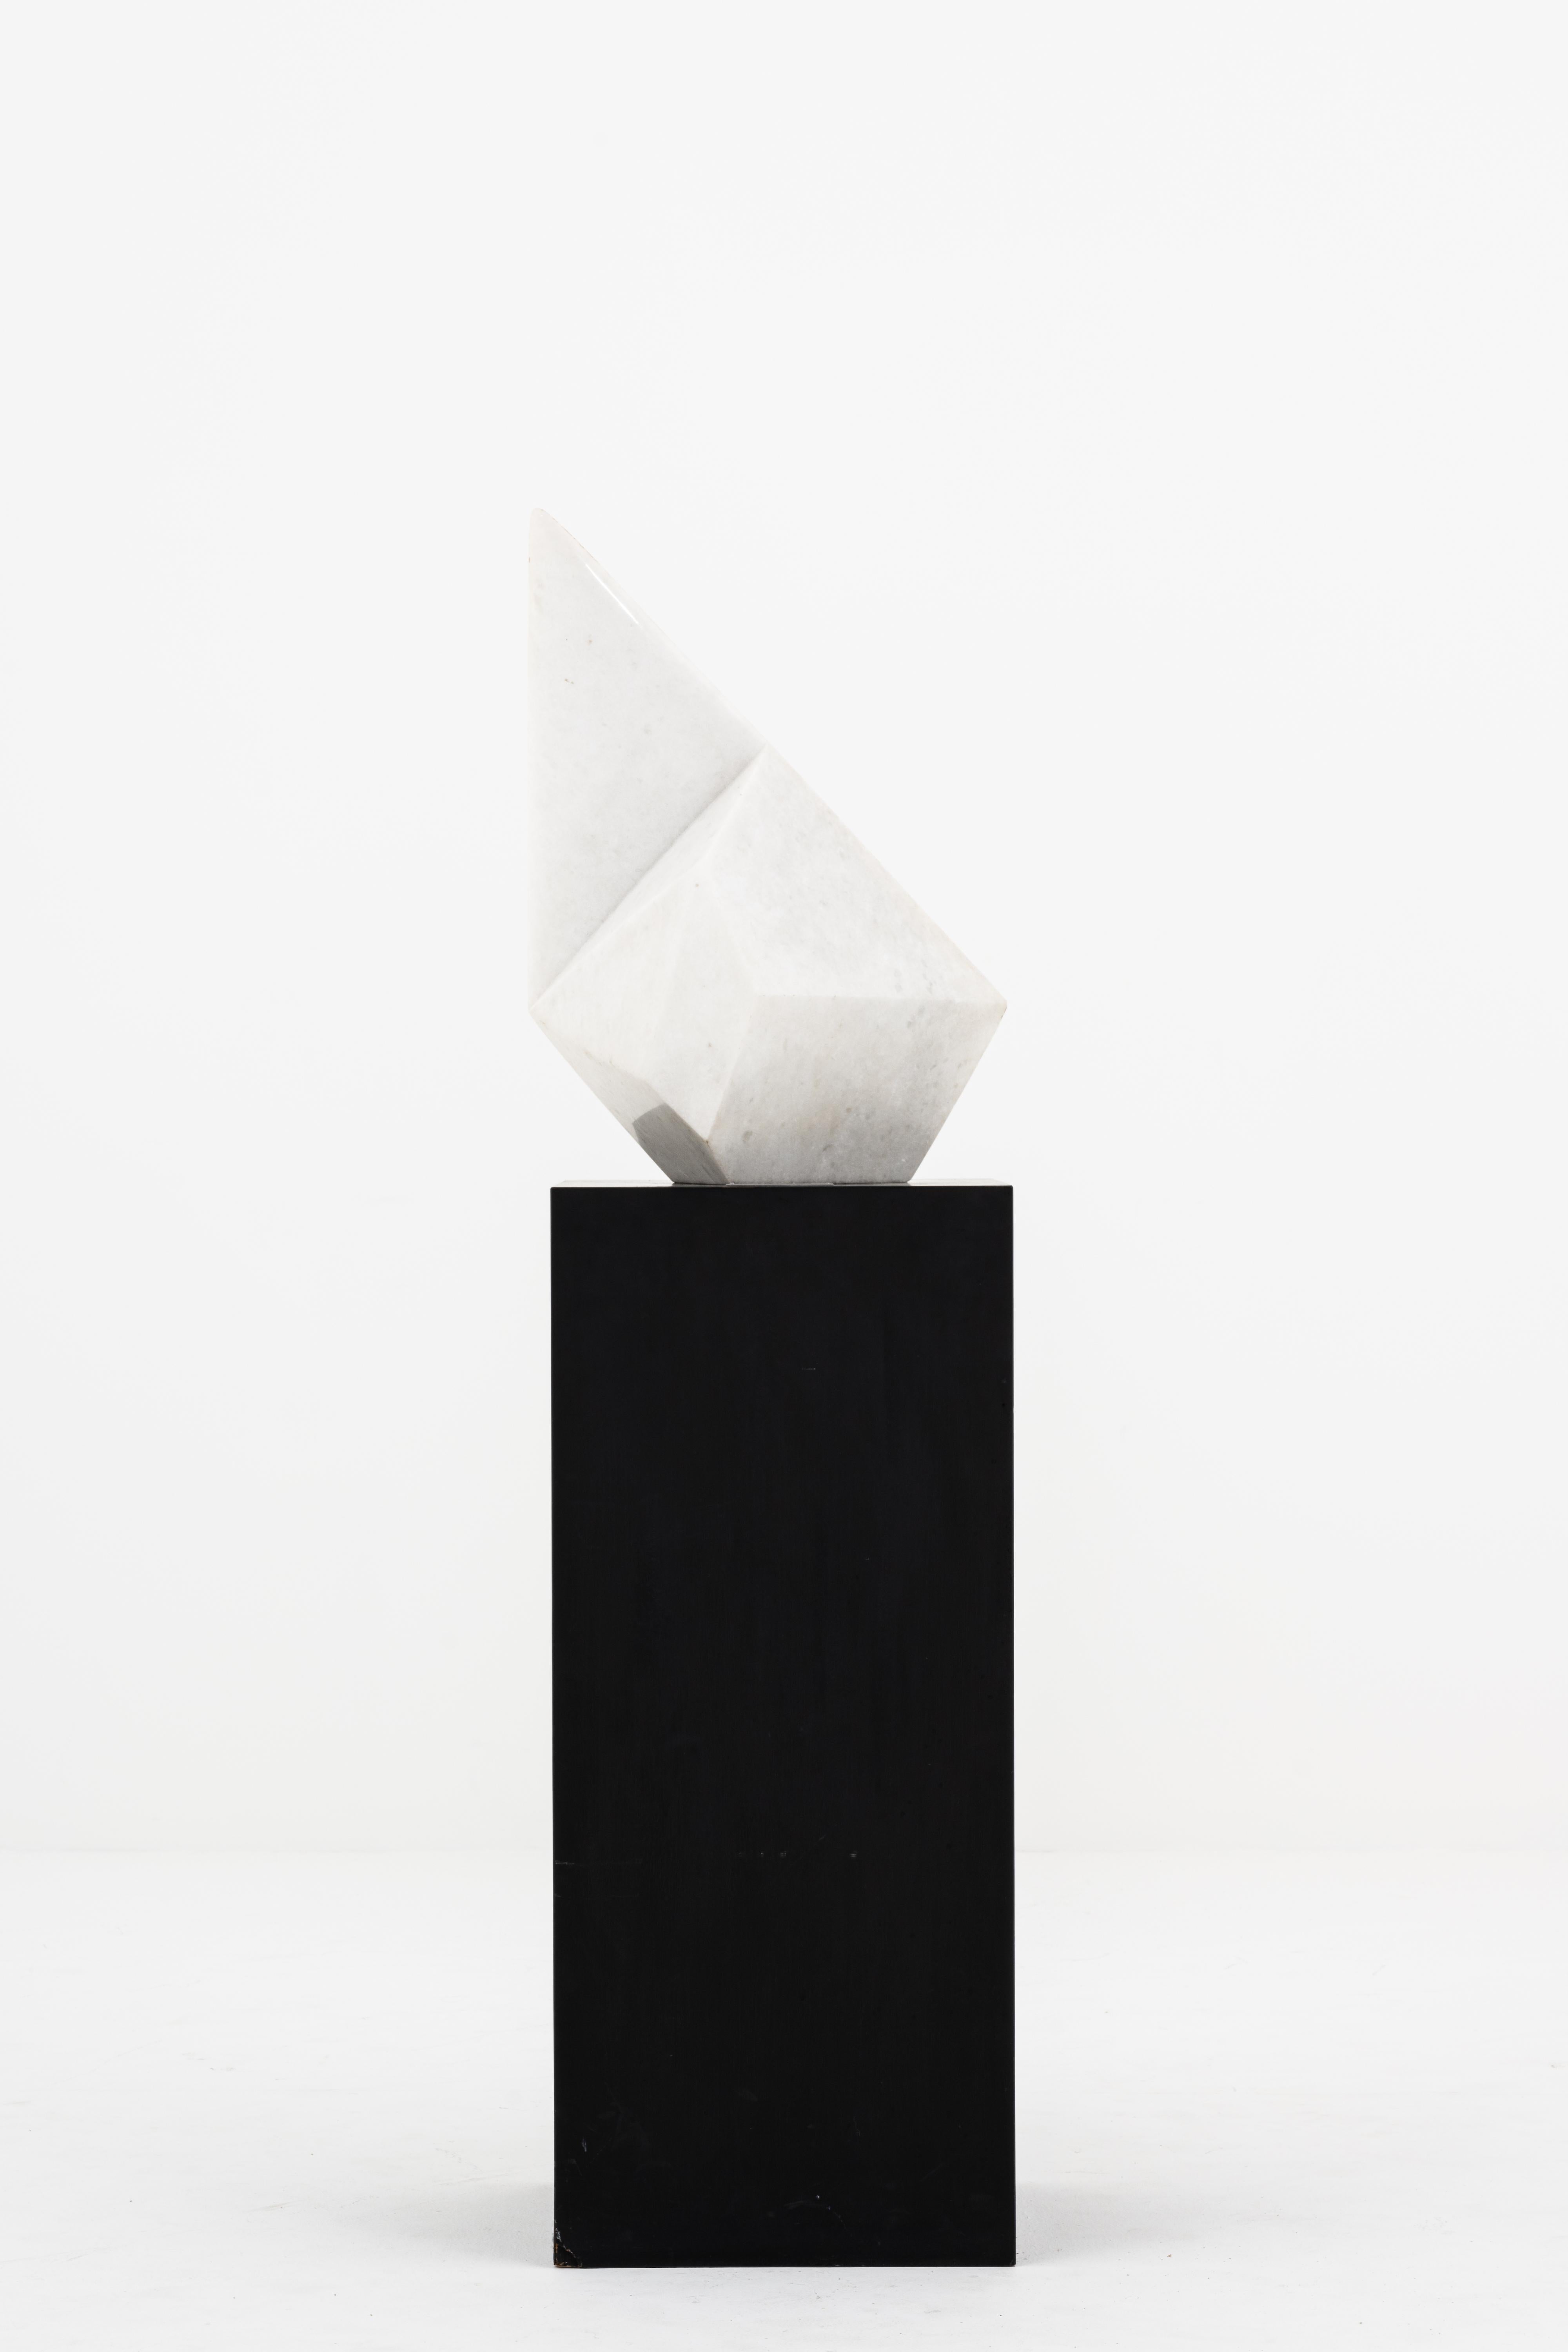 Emile Gilioli (1911 - 1977)
Astral, 1966
Marbre blanc, base en bois laqué noir
Sculpture : H. 63,5 x 29 x 39 cm / Socle : H. 100 x 43 x 42,5 cm

À l'apogée du XXe siècle, Émile Gilioli est l'une des figures majeures de l'abstraction lyrique de la